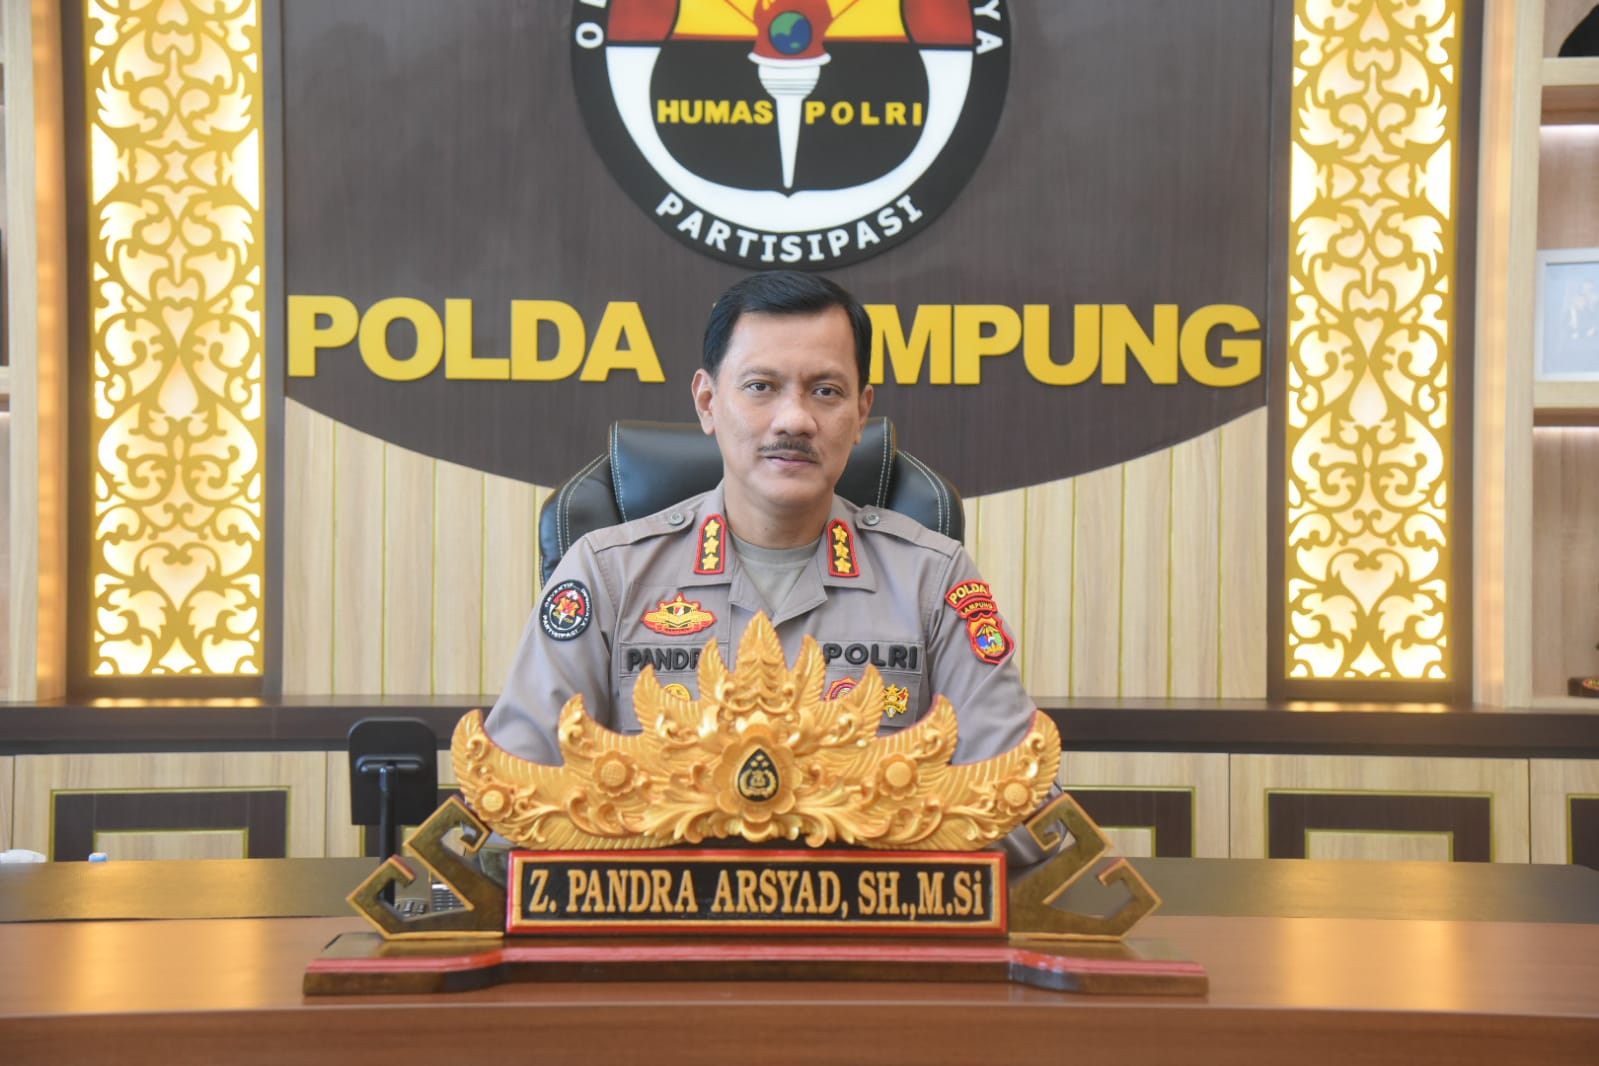 Polda Lampung Prihatin Atas Aksi Unras UU Cipta Kerja di DPRD Lampung Yang Berakhir Ricuh